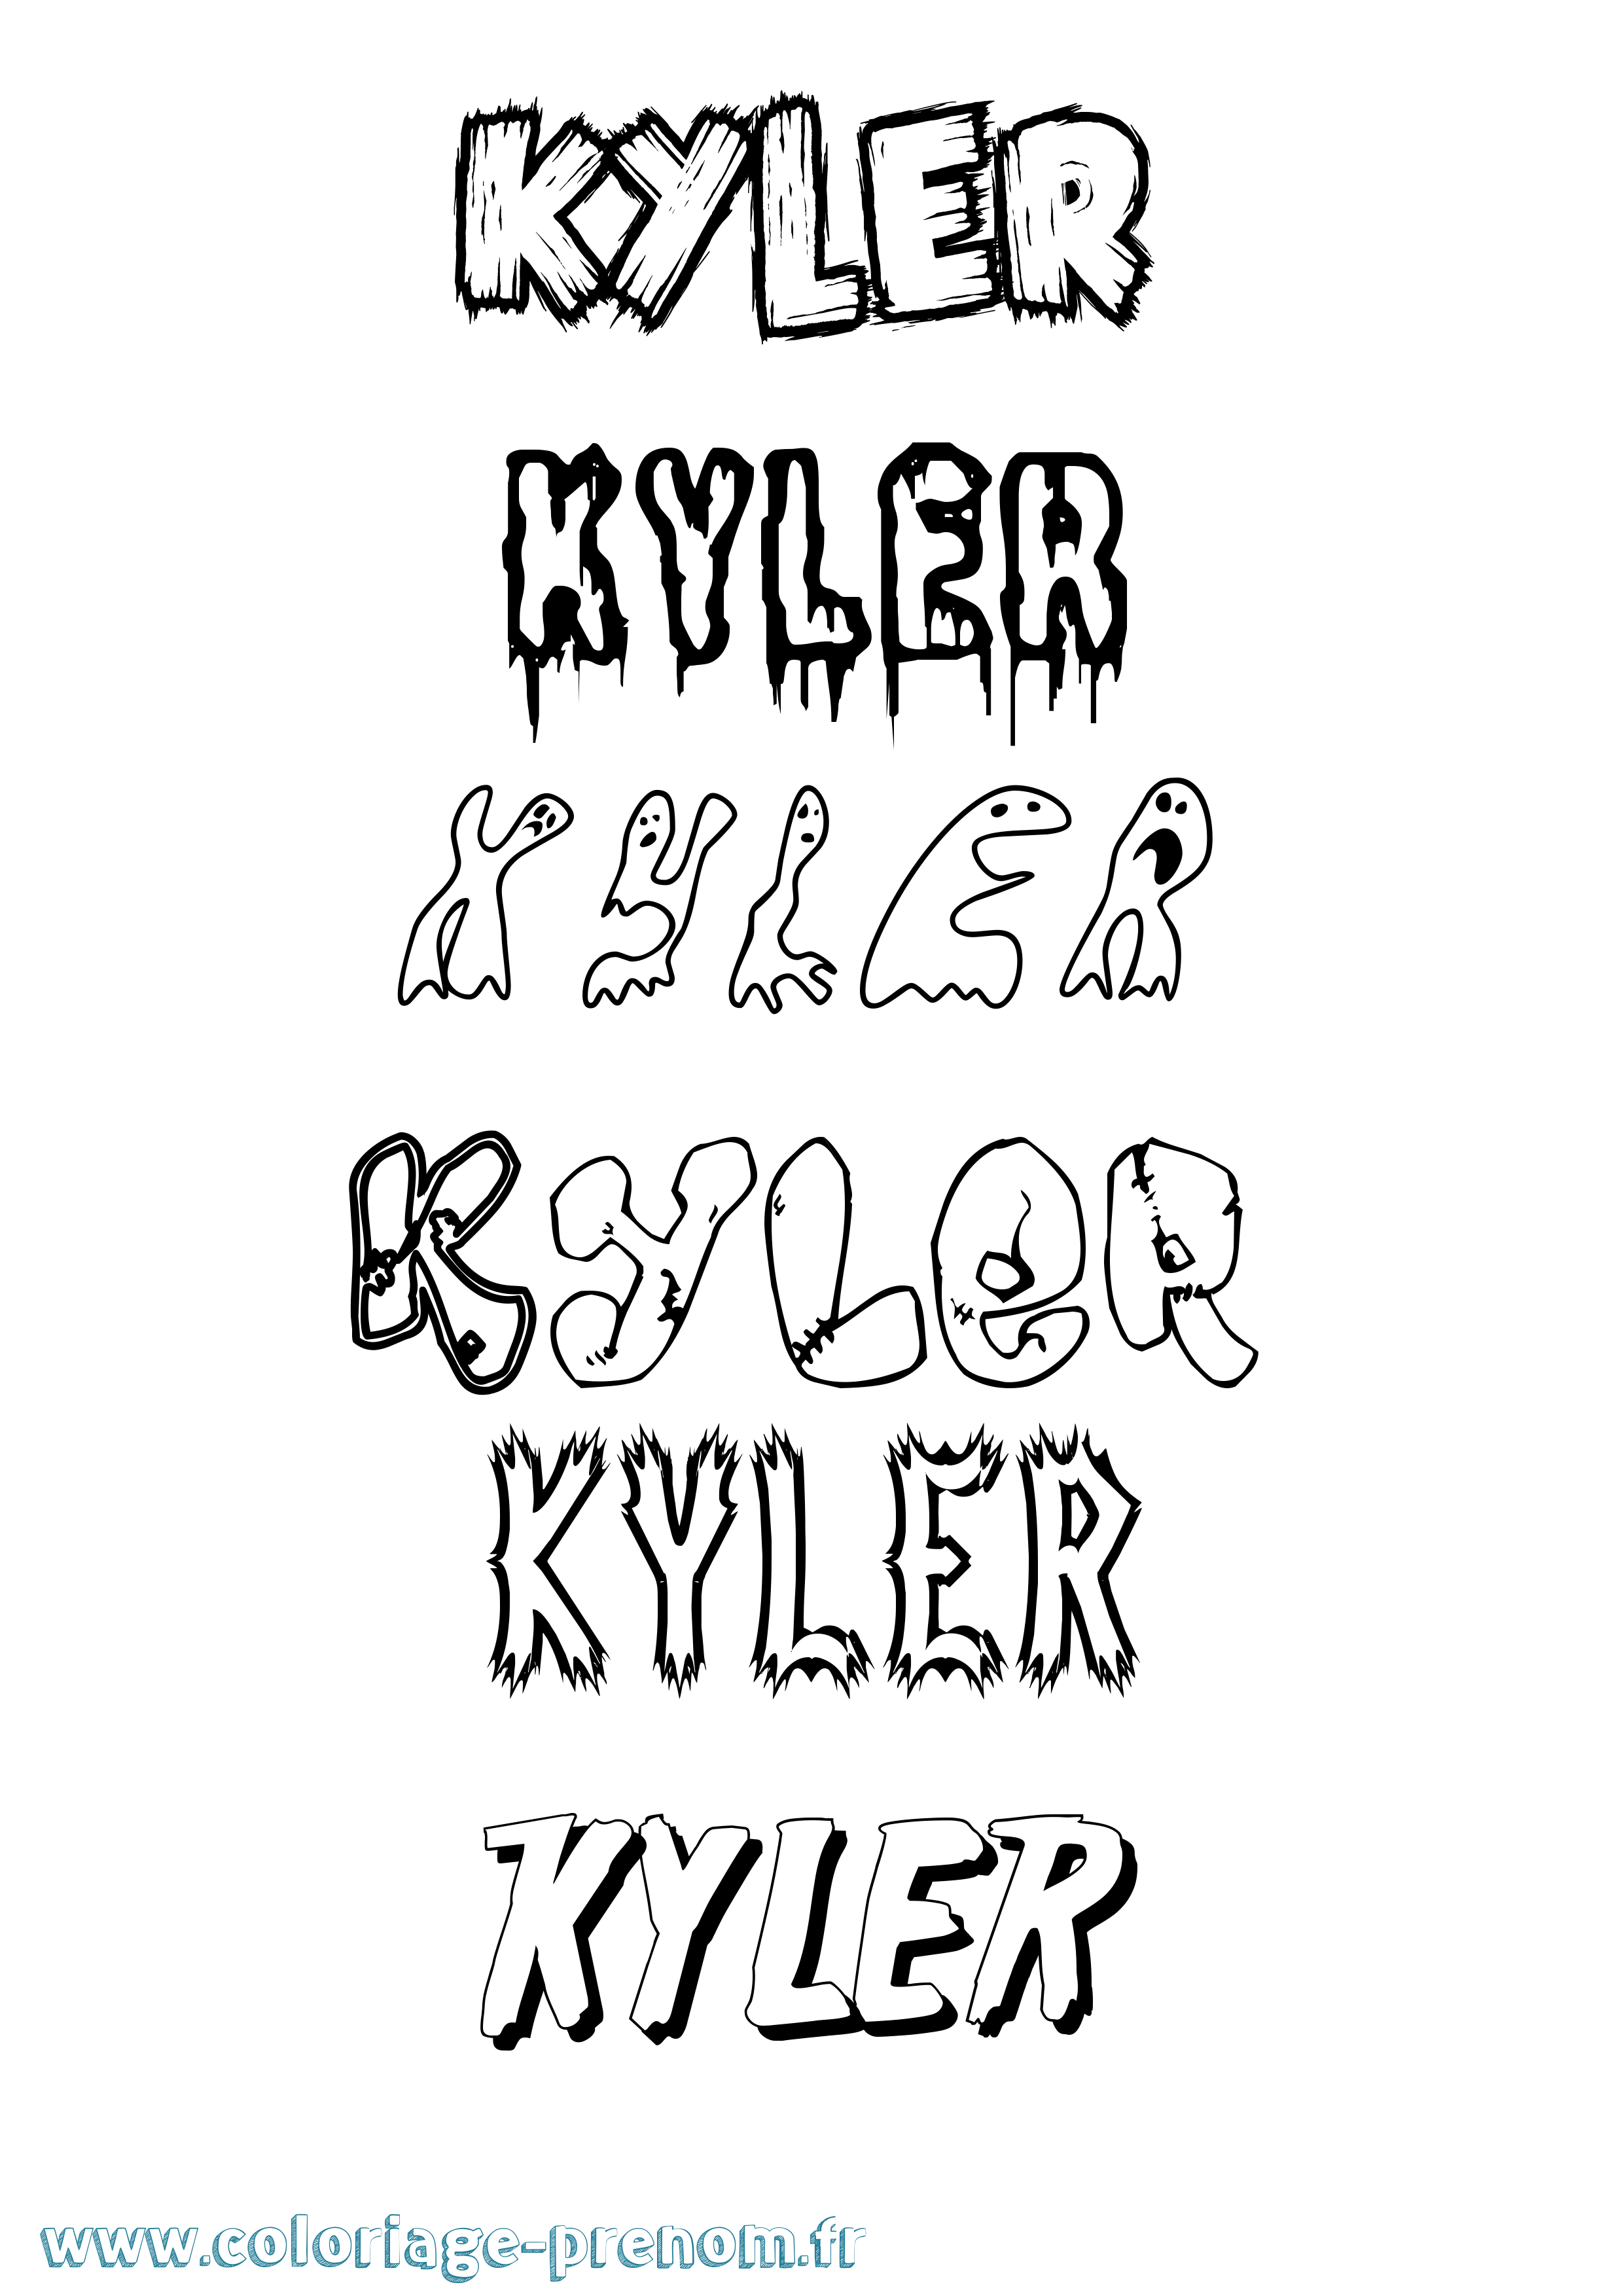 Coloriage prénom Kyler Frisson